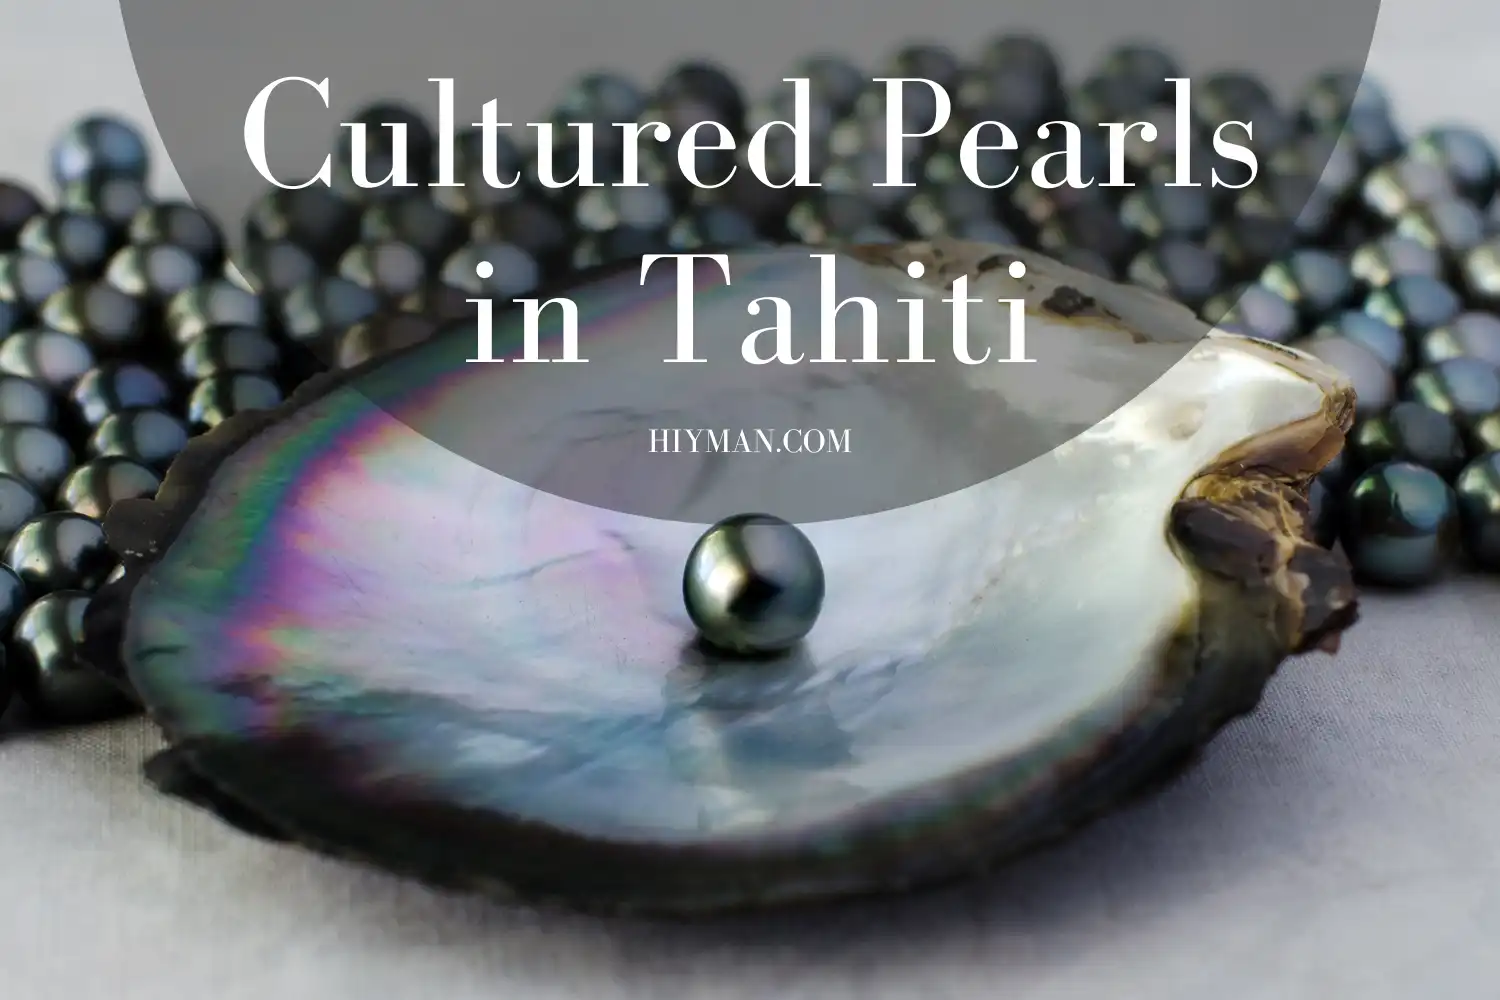 Cultural Pearls-Cultured Pearls in Tahiti